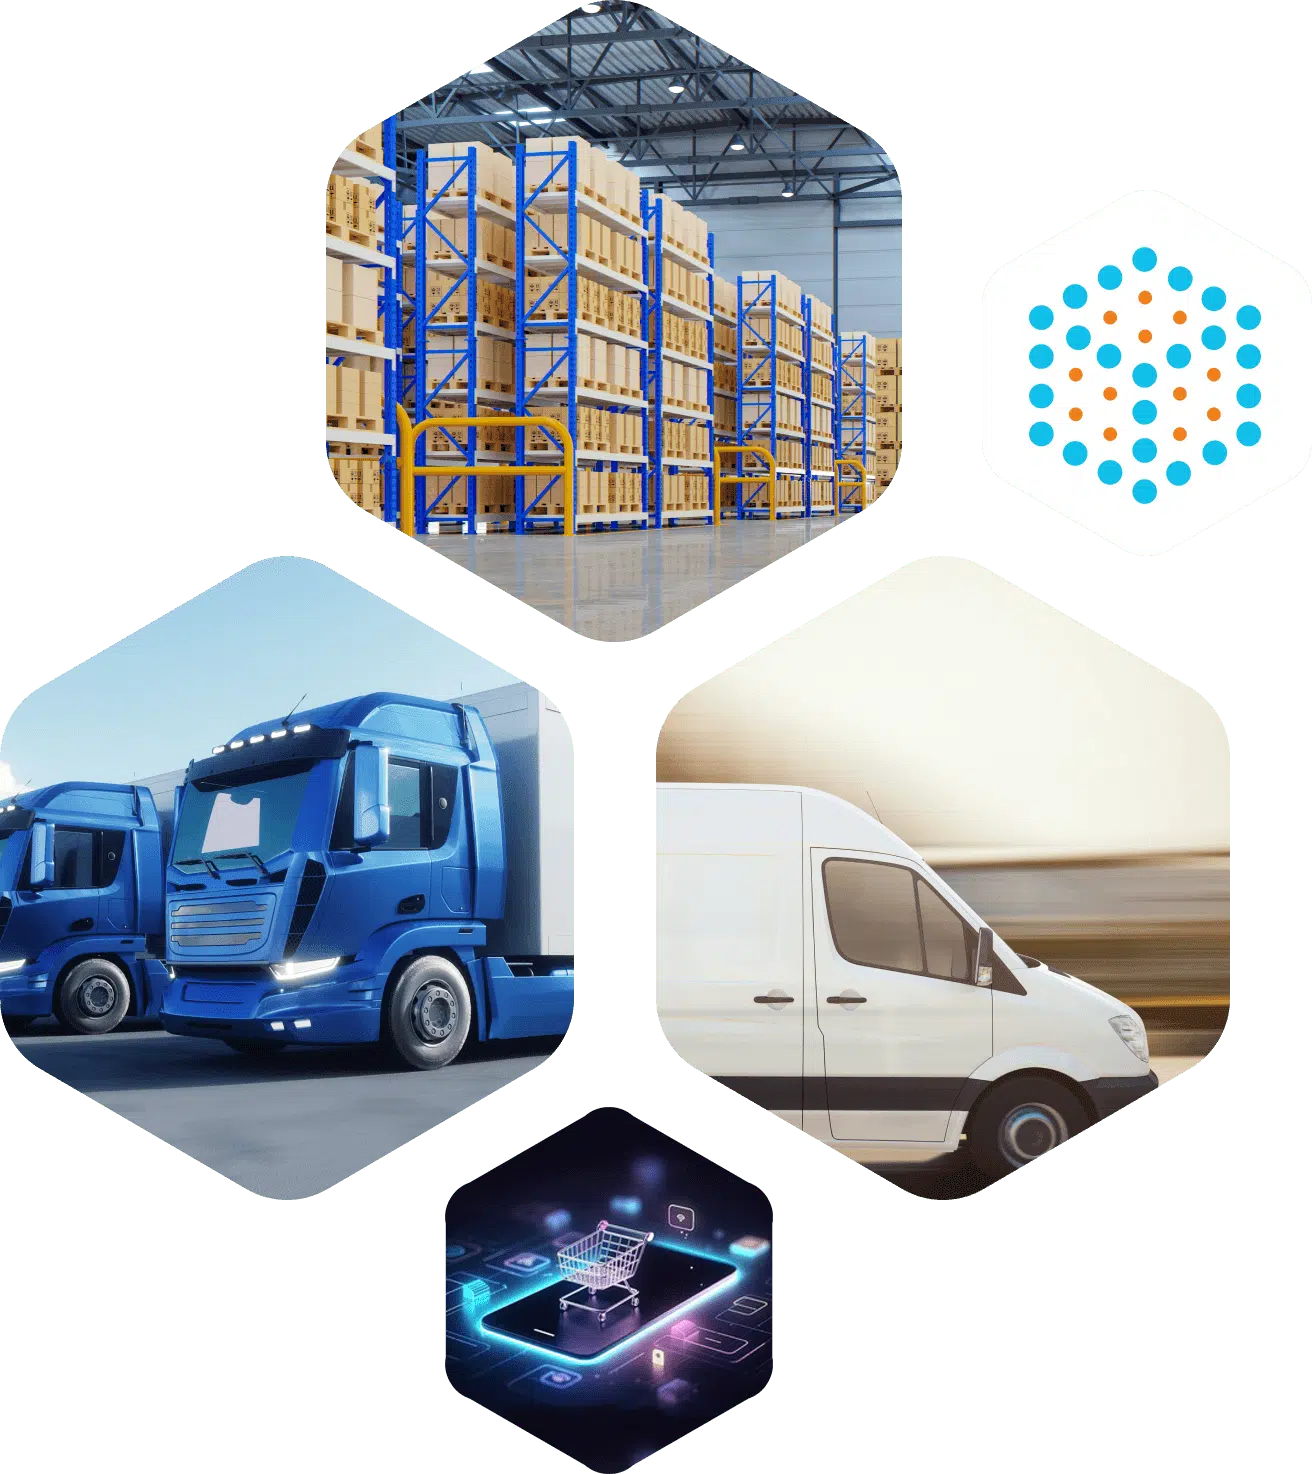 Colaj de imagini reprezentând diferite aspecte ale serviciilor de curierat: un depozit cu rafturi de stocare, camioane de livrare, o furgonetă albă în mișcare și o reprezentare a cumpărăturilor online și a tehnologiei blockchain.